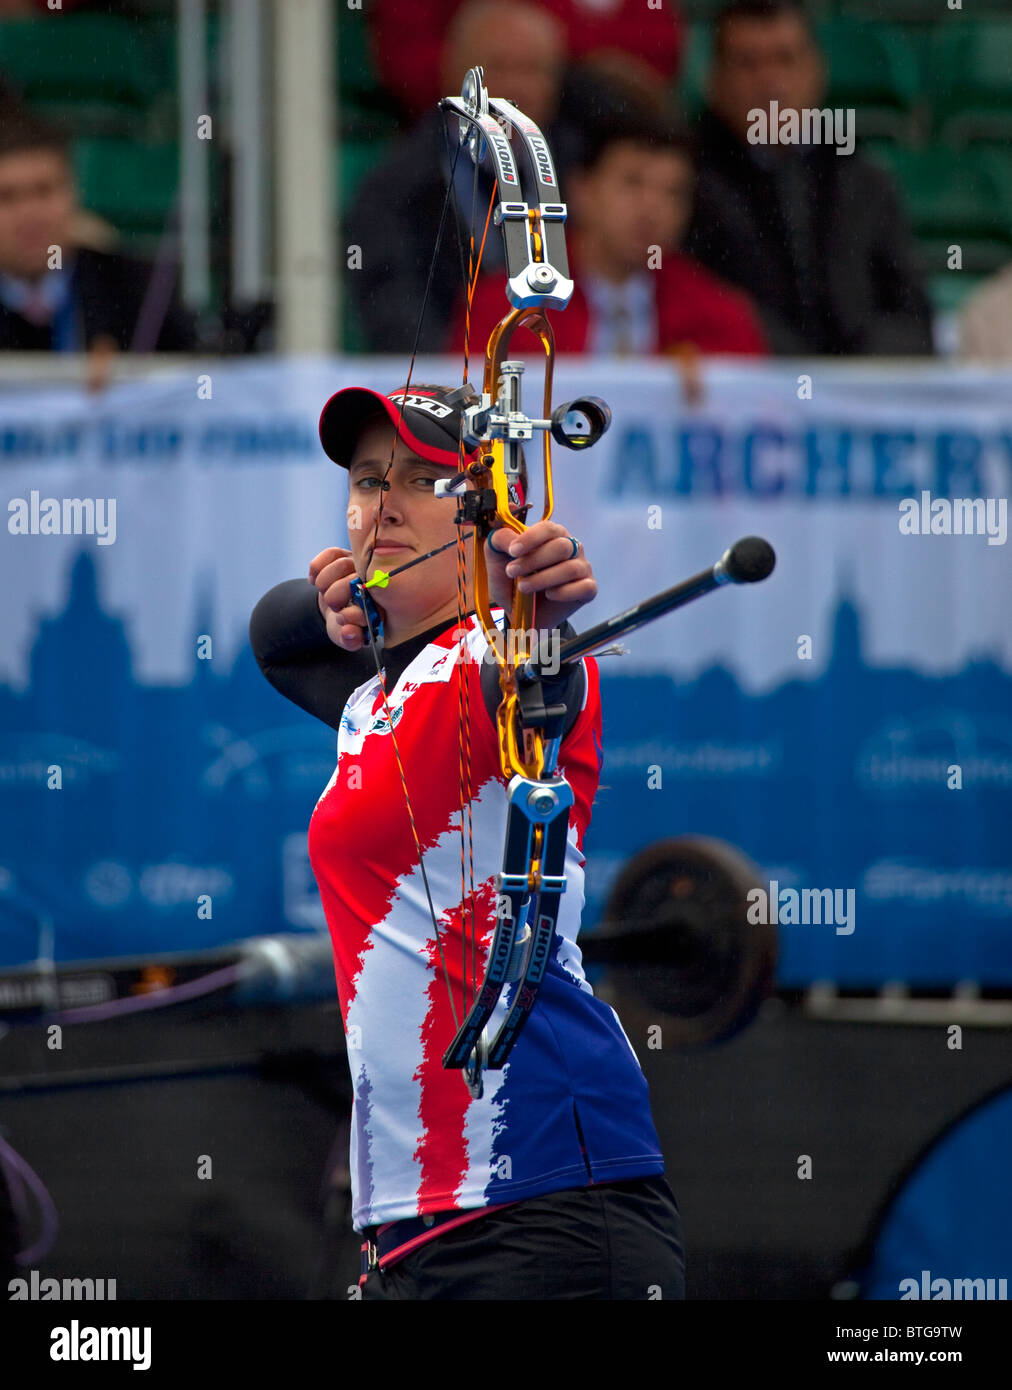 Nicky Hunt Uk Archer mit Compoundbogen, Archery World Cup Event, Edinburgh, Schottland, Vereinigtes Königreich, Europa Stockfoto